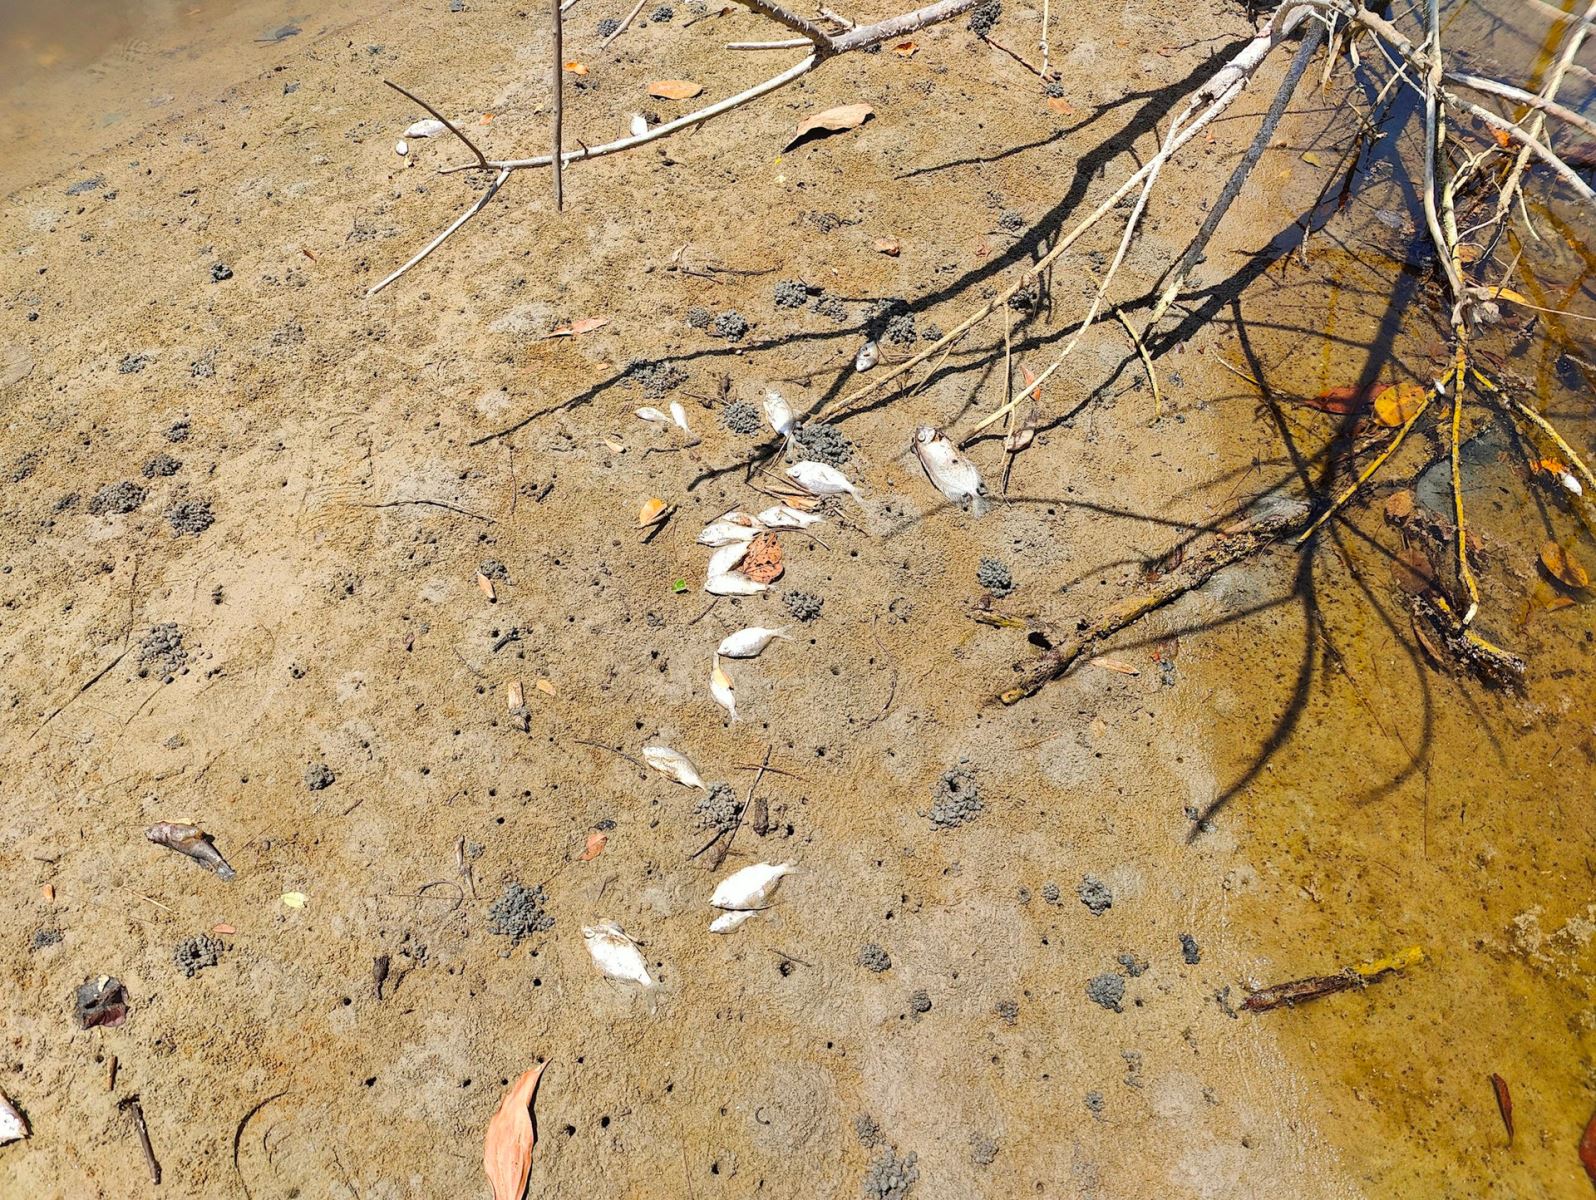 Cơ quan chức năng Thừa Thiên Huế đang làm rõ nguyên nhân khiến cá tự nhiên chết bất thường hàng loạt tại sông Mỹ Gia đoạn qua thôn Phú Hải, xã Lộc Vĩnh (huyện Phú Lộc).